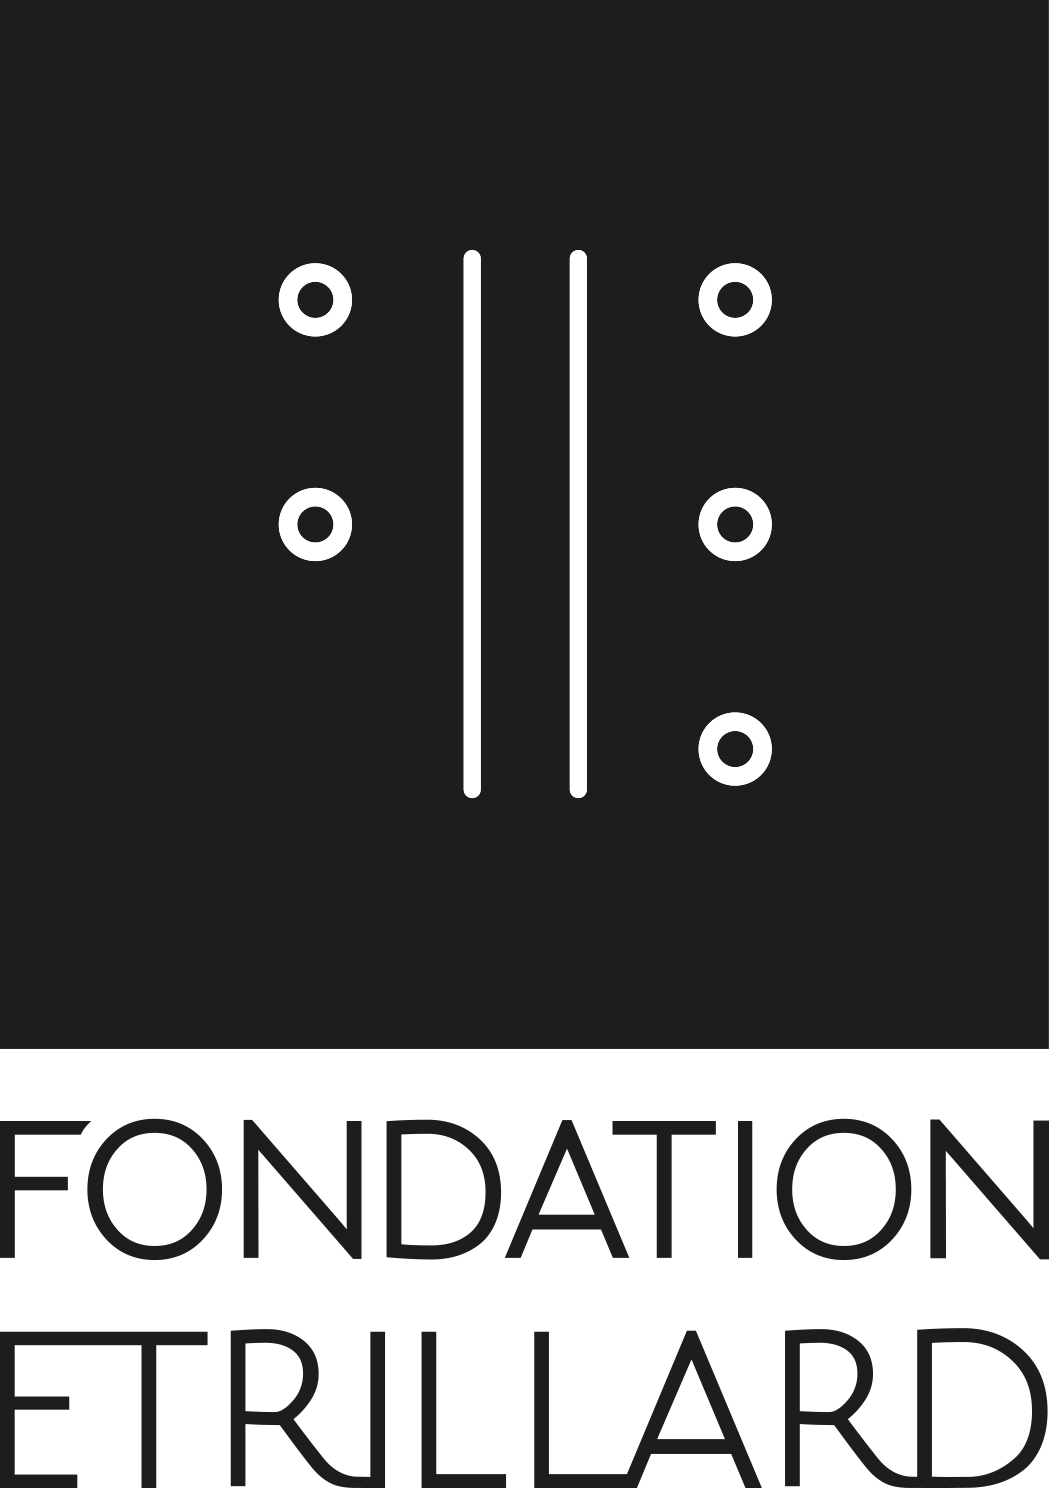 La Fondation Etrillard, grand mécène Suisse, apporte son soutien au canal du Midi